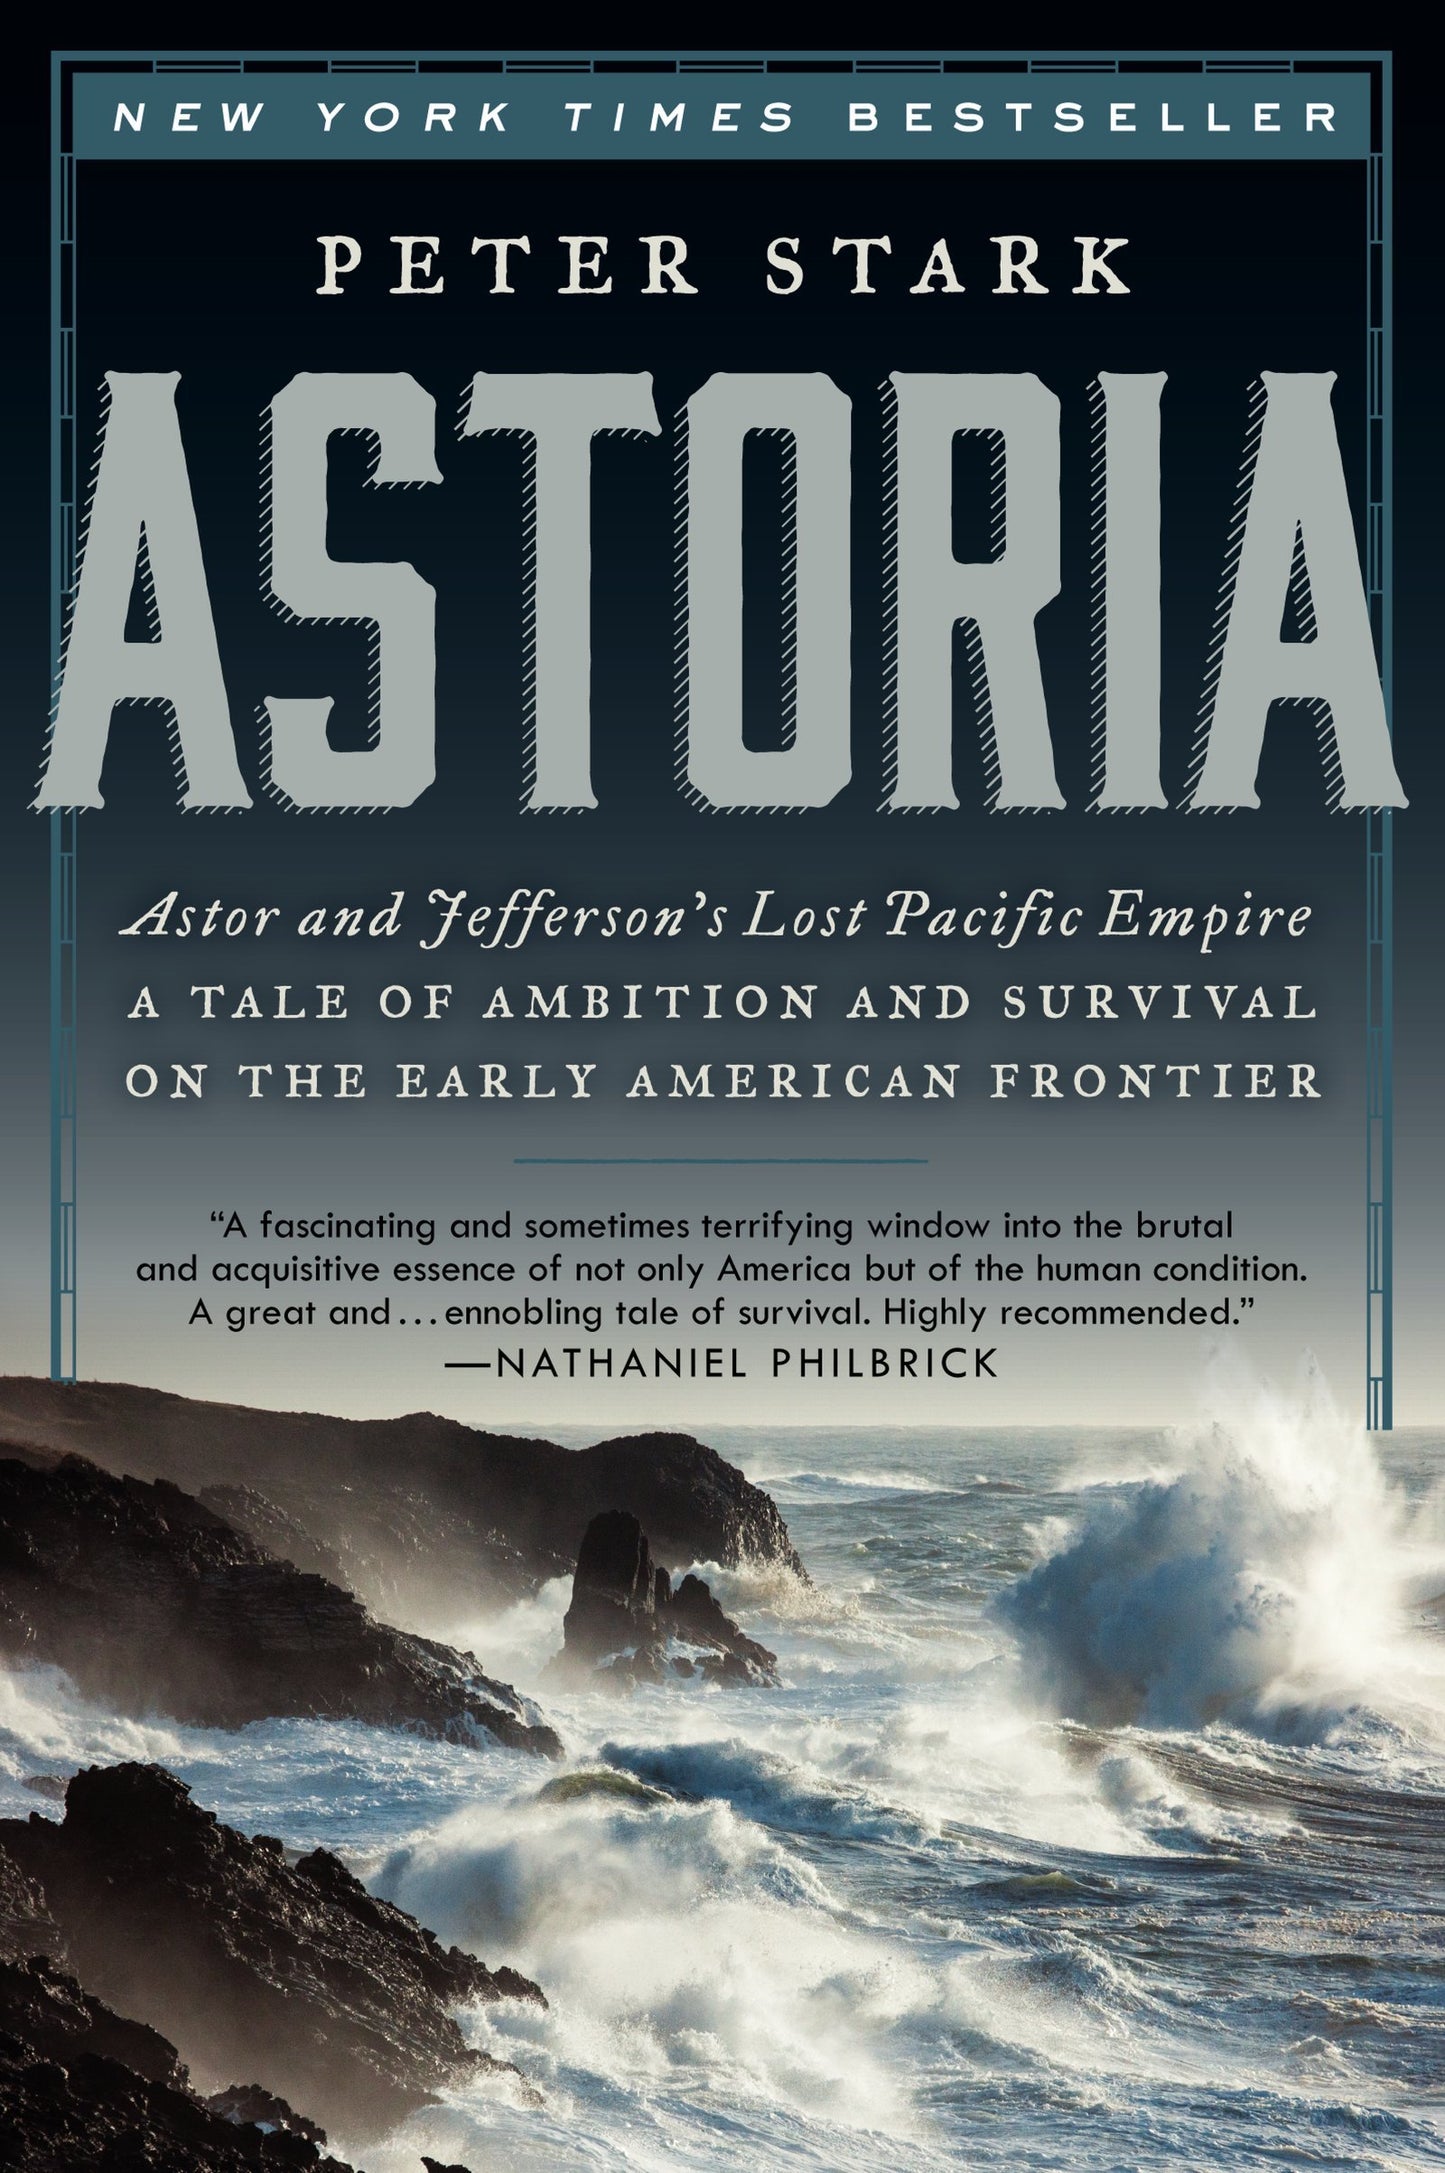 Astoria: Astor and Jefferson's Lost Pacific Empire